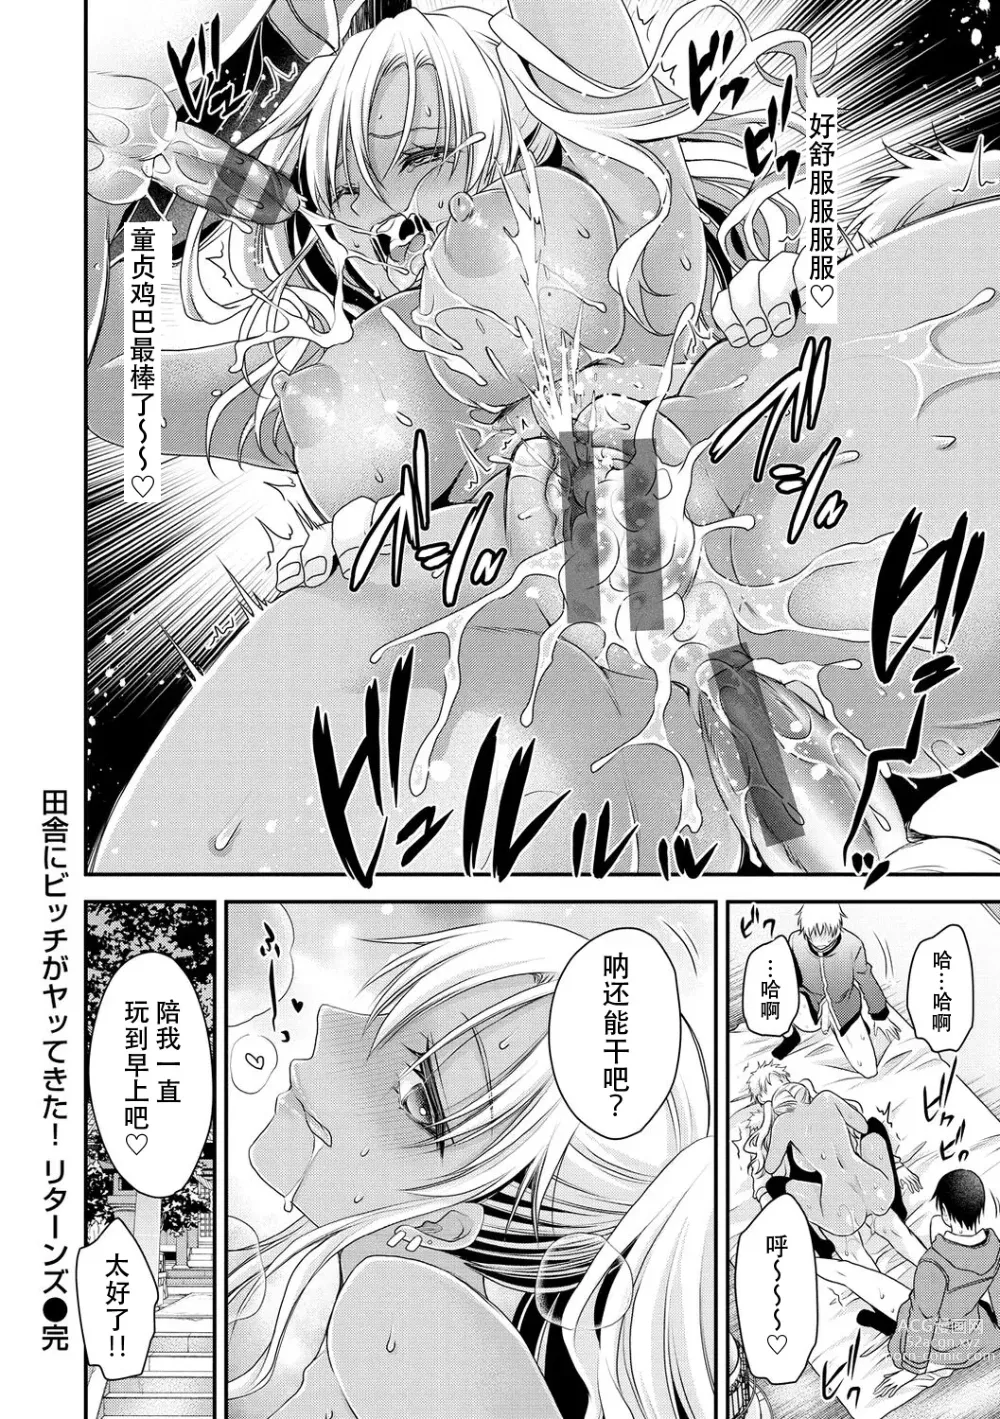 Page 28 of manga Inaka ni Bitch ga Yattekita! + Inaka ni Bitch ga Yattekita! Returns {Watashi No Tondemo Shotaiken)